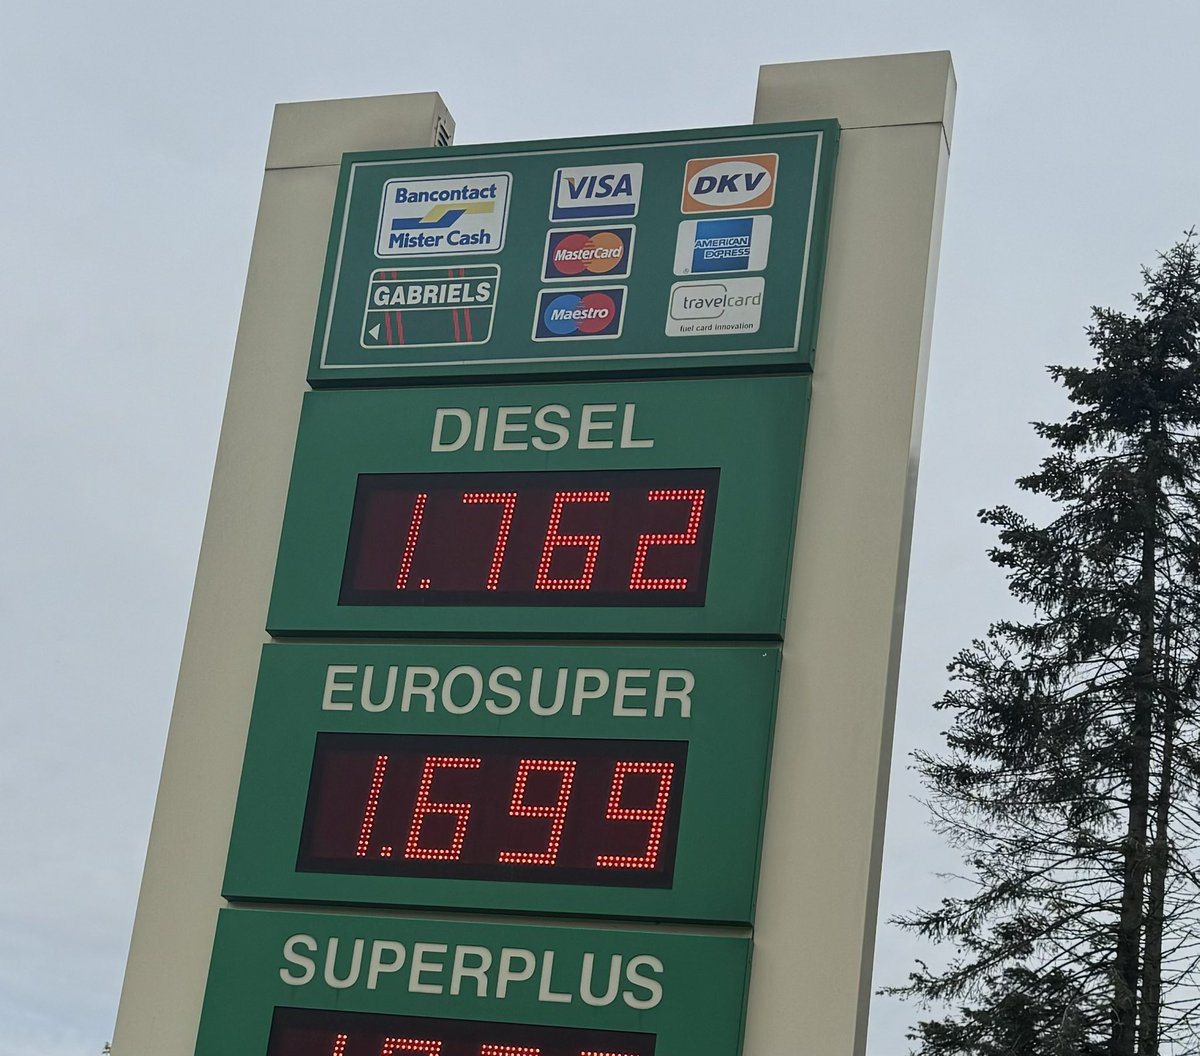 1.69 voor de benzine in Belgie.
We worden keihard genaaid in Nederland!!!

Hey @F__Timmermans wanneer los je dit nu eens op?? #PvdA

#benzineprijs